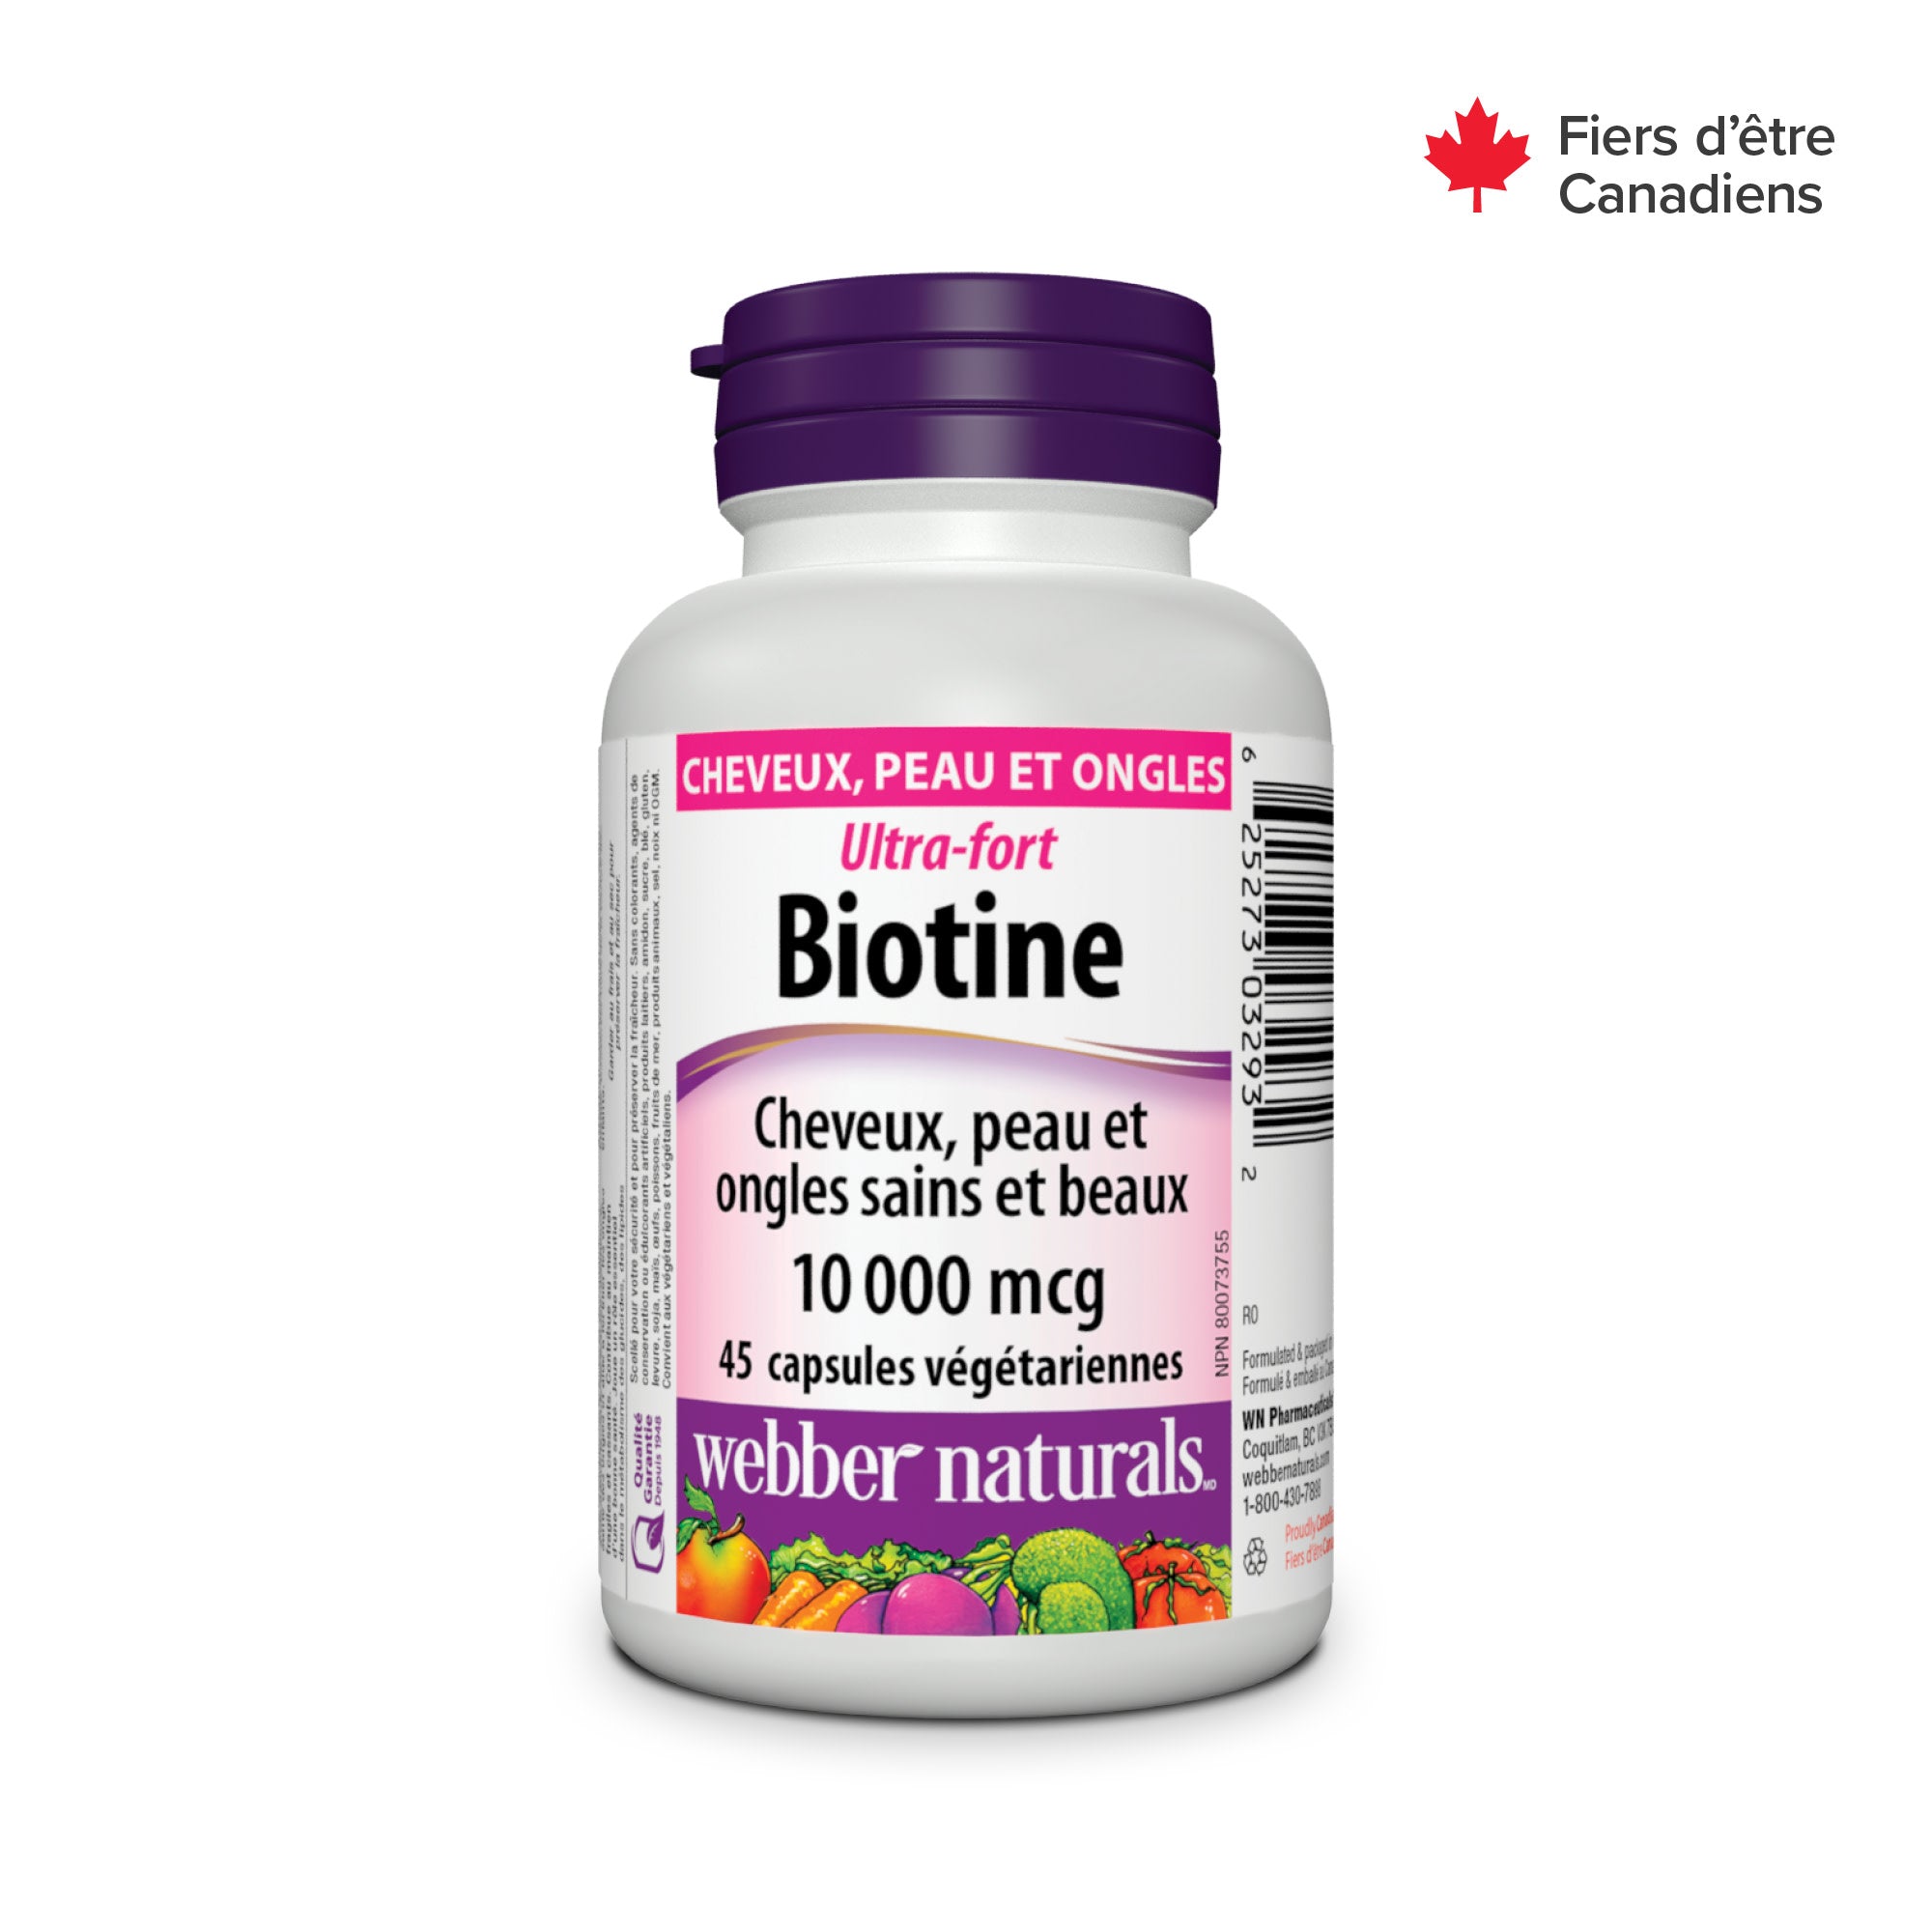 Extra Strength Biotin 10,000 mcg for Webber Naturals|v|hi-res|WN3293